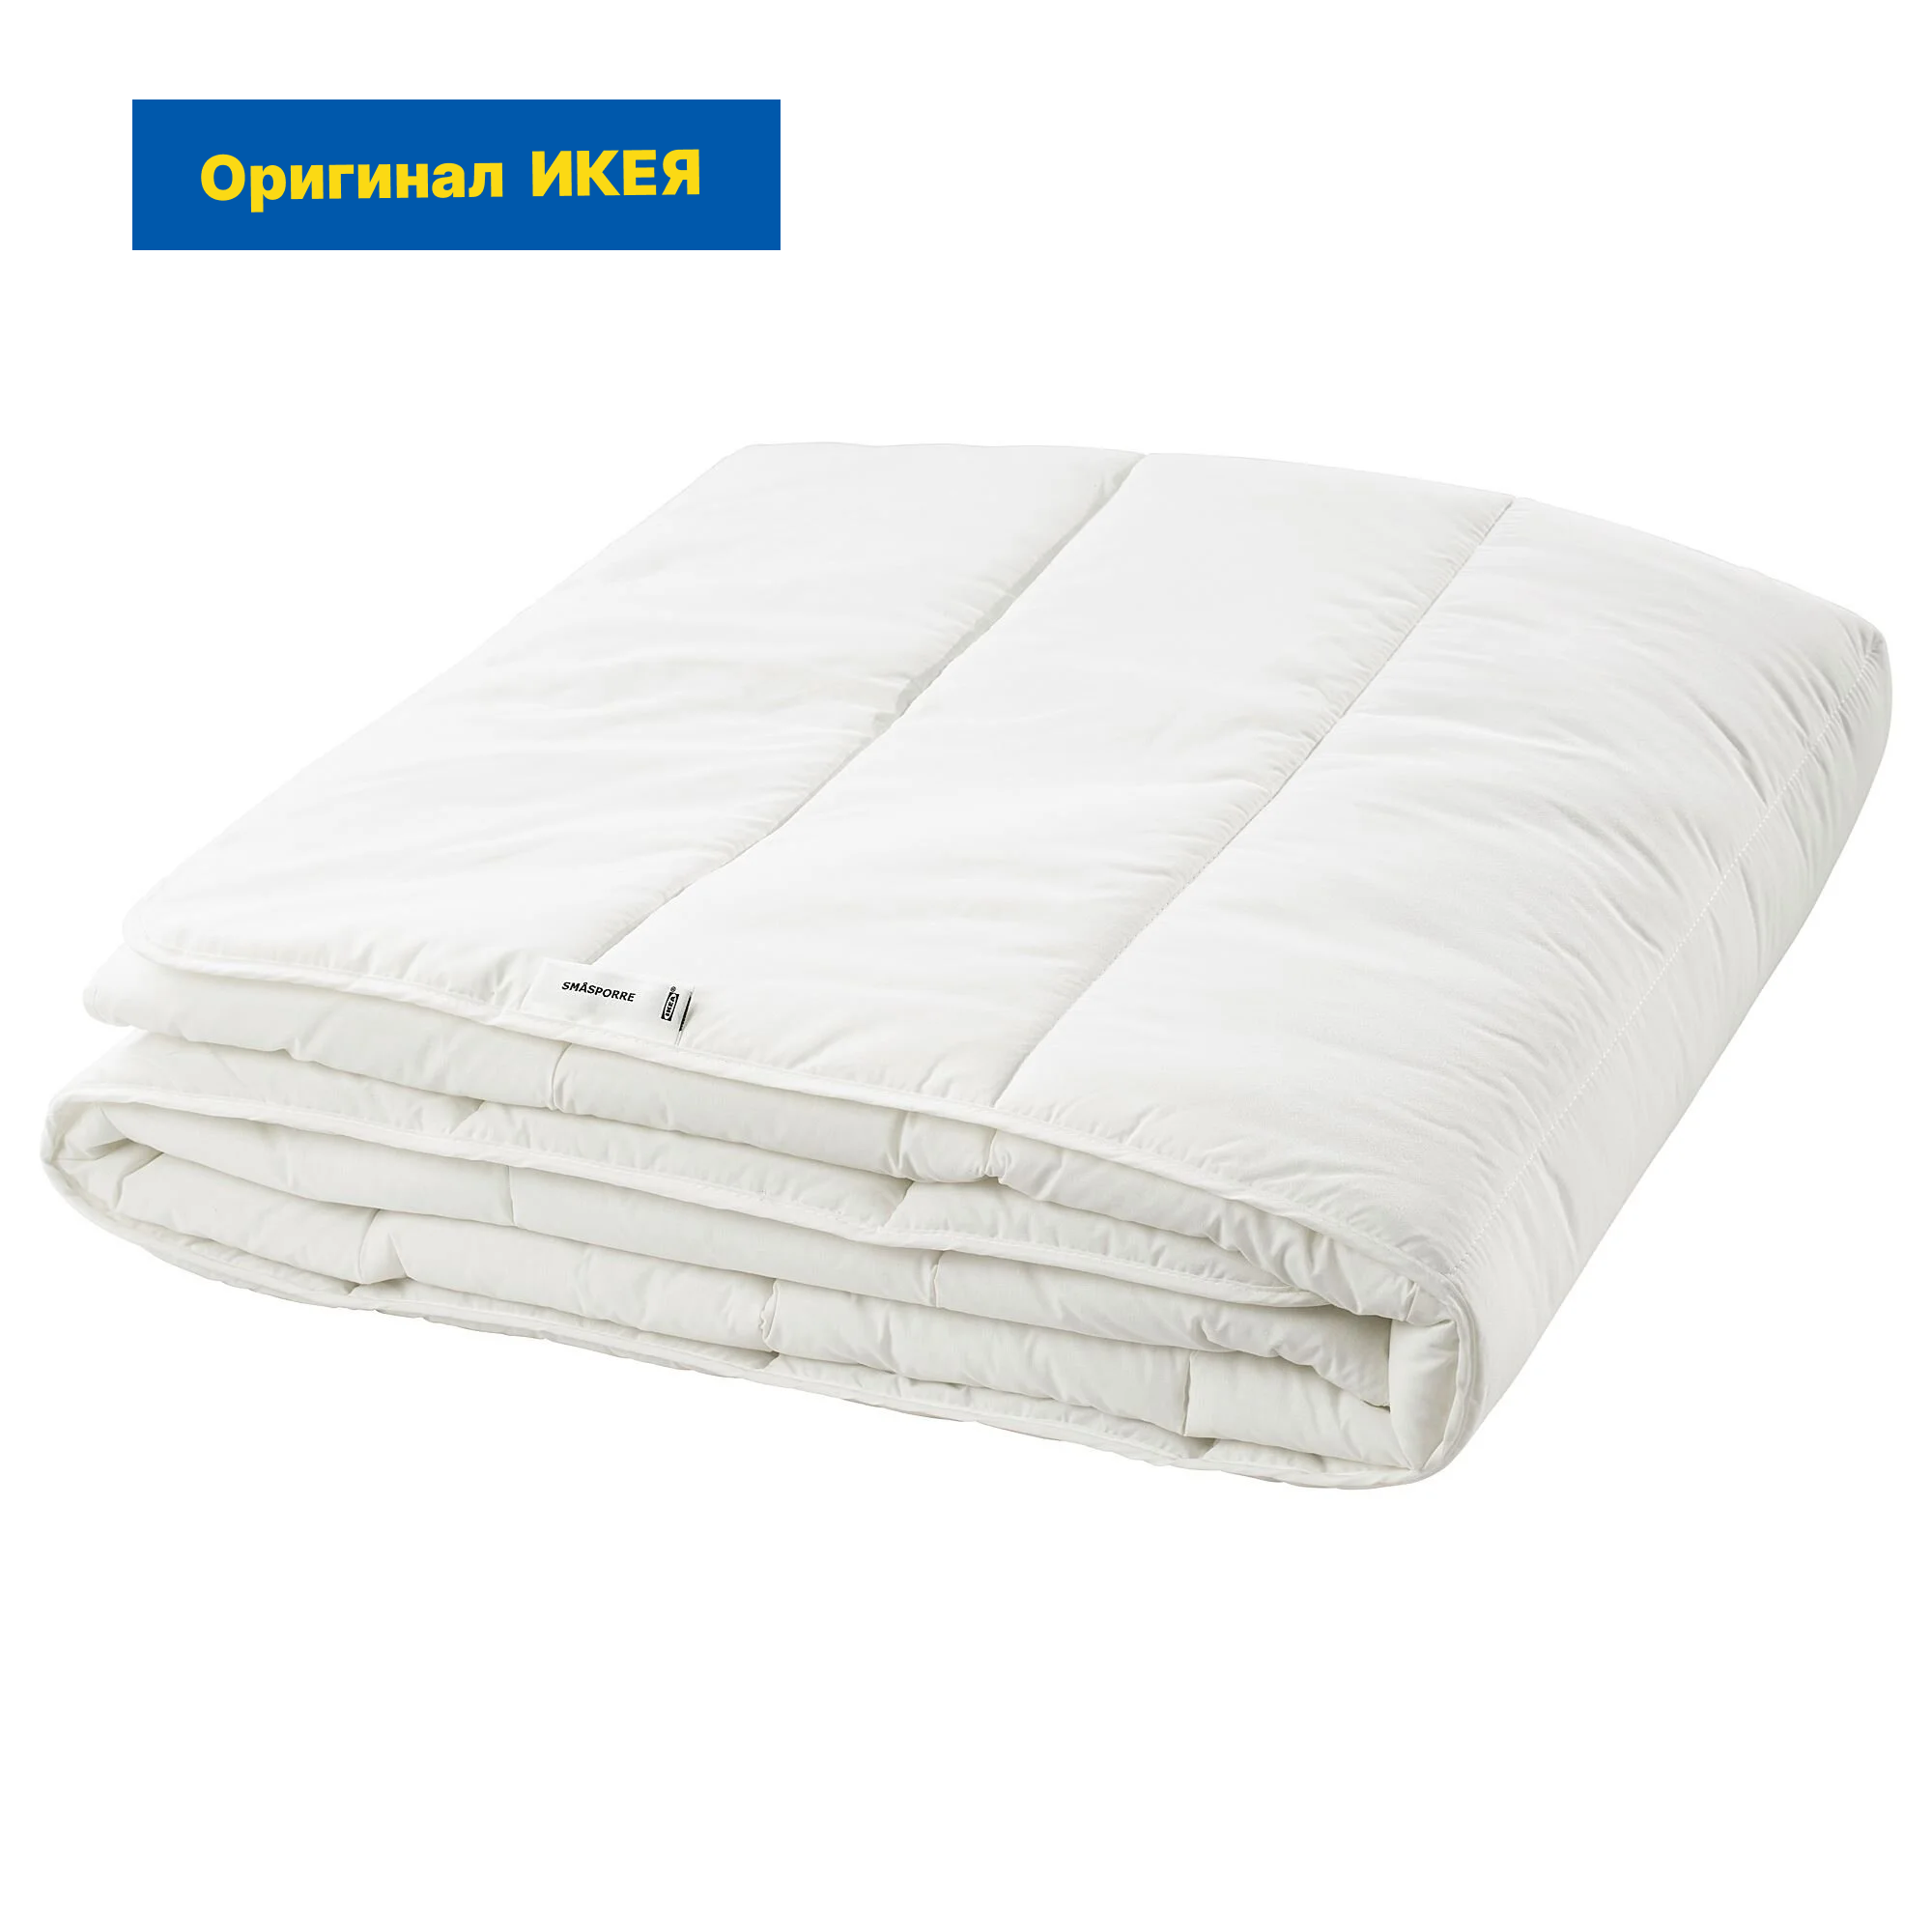 Одеяло пуховое IKEA SMASPORRE / икея смоспорре, 240х220 см, легкое